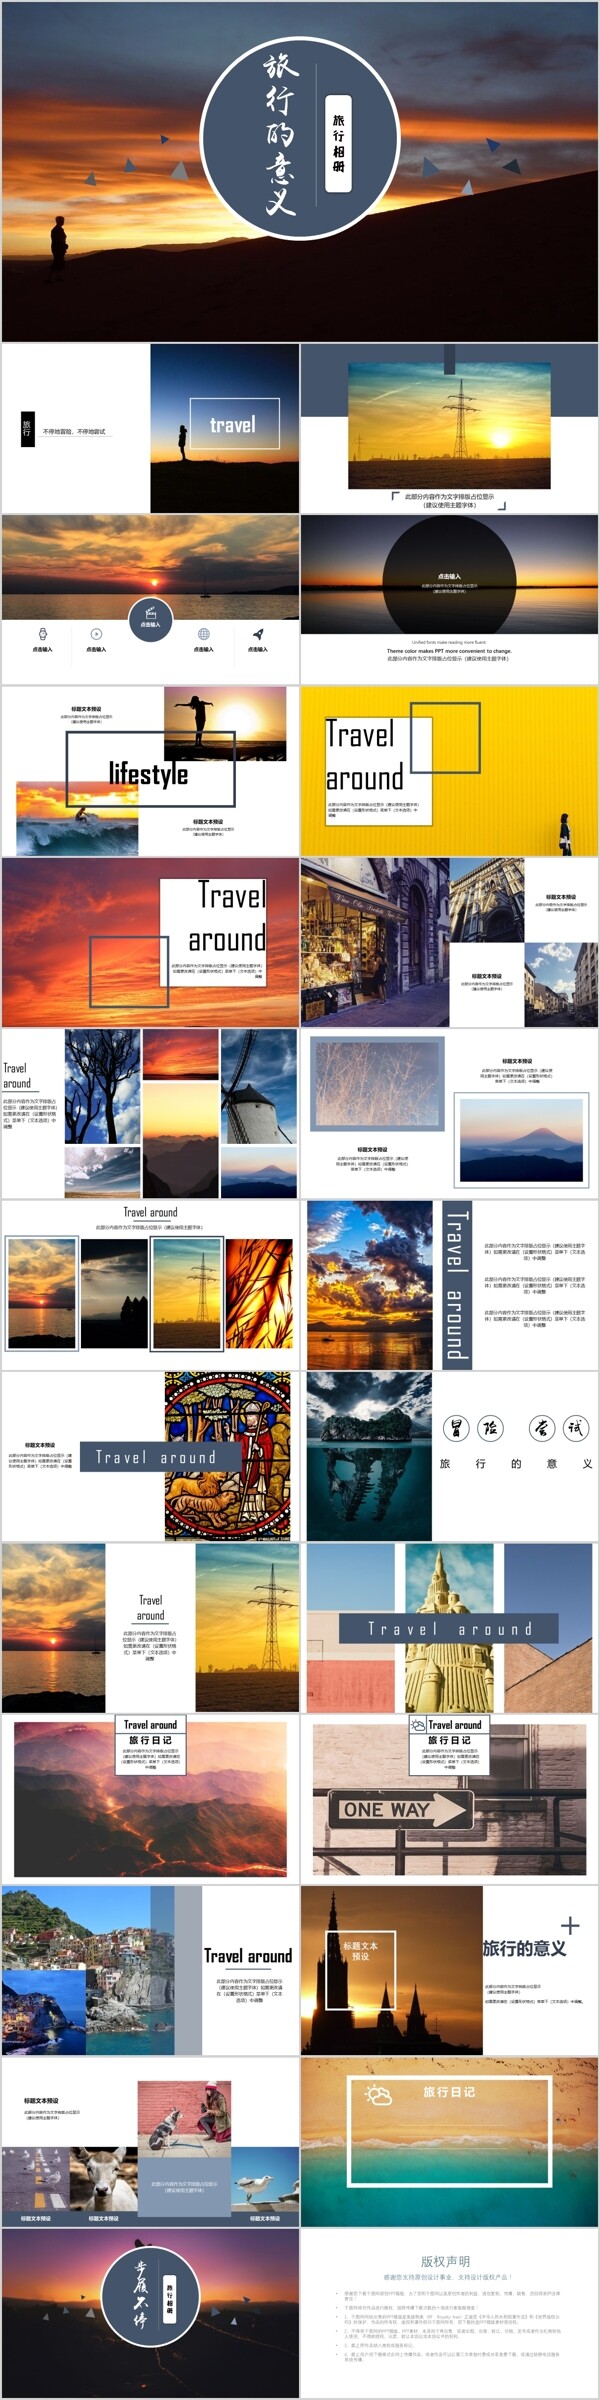 欧美杂志风旅行相册旅游宣传PPT模板